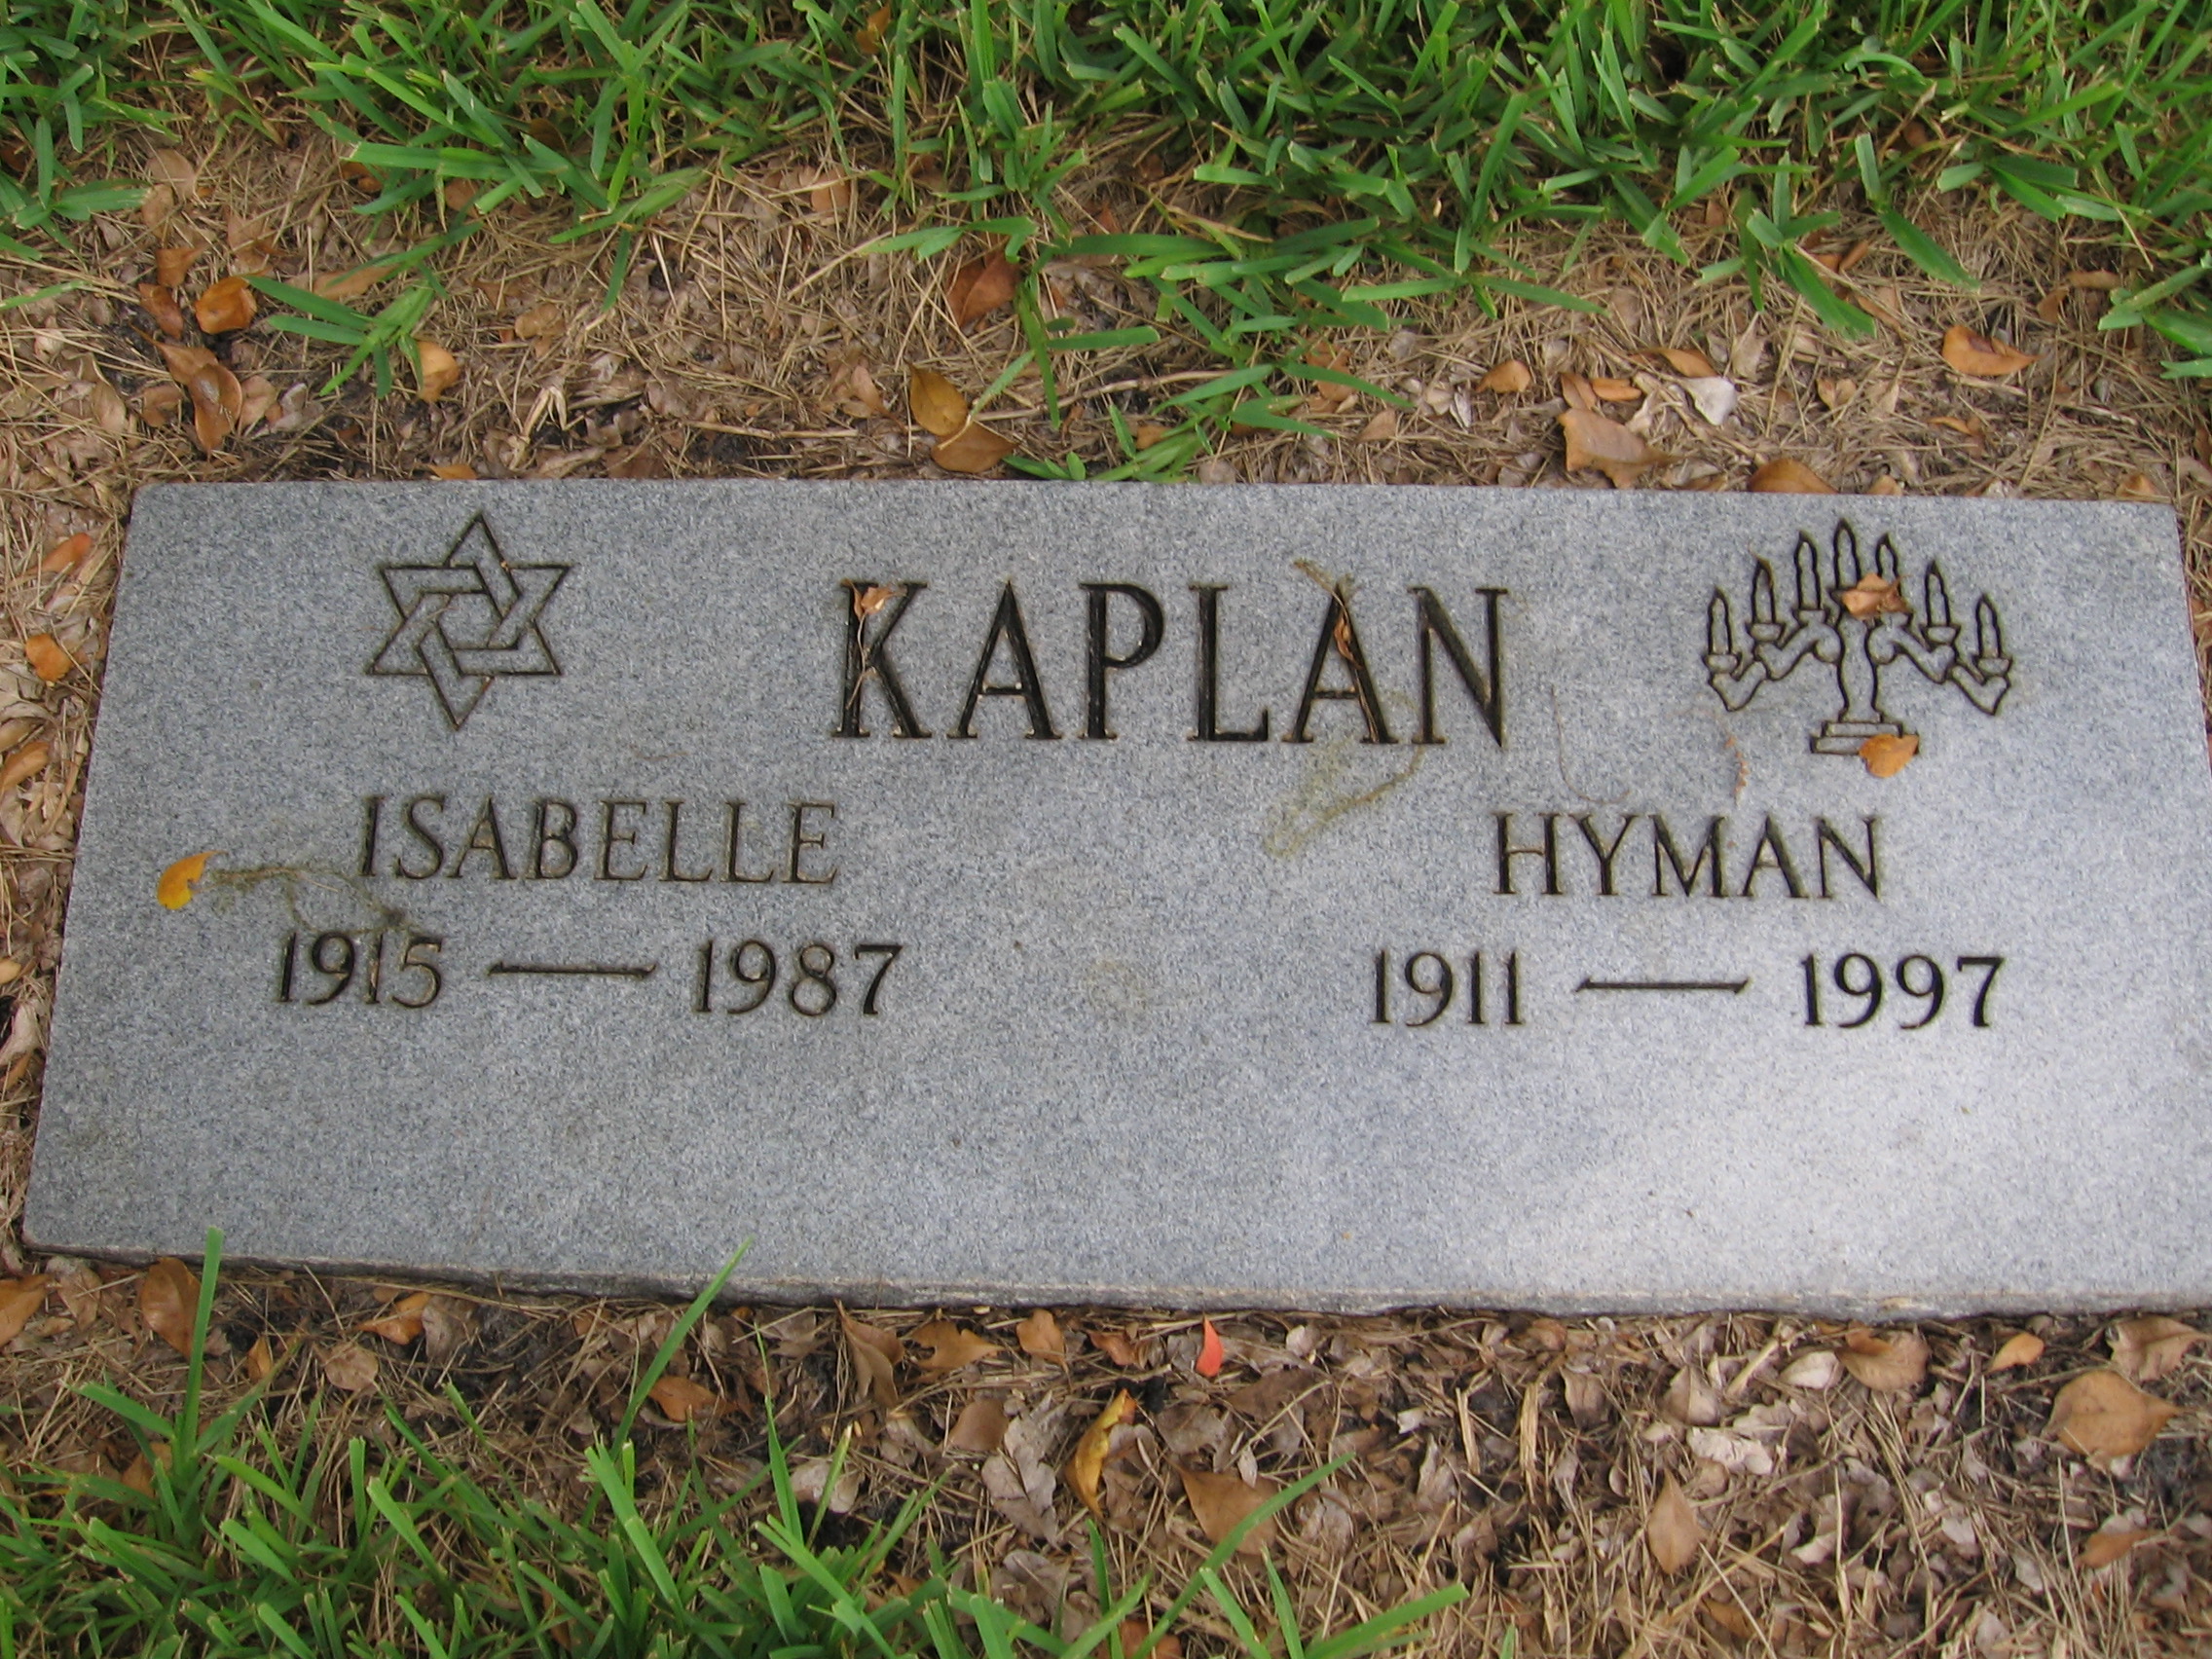 Isabelle Kaplan